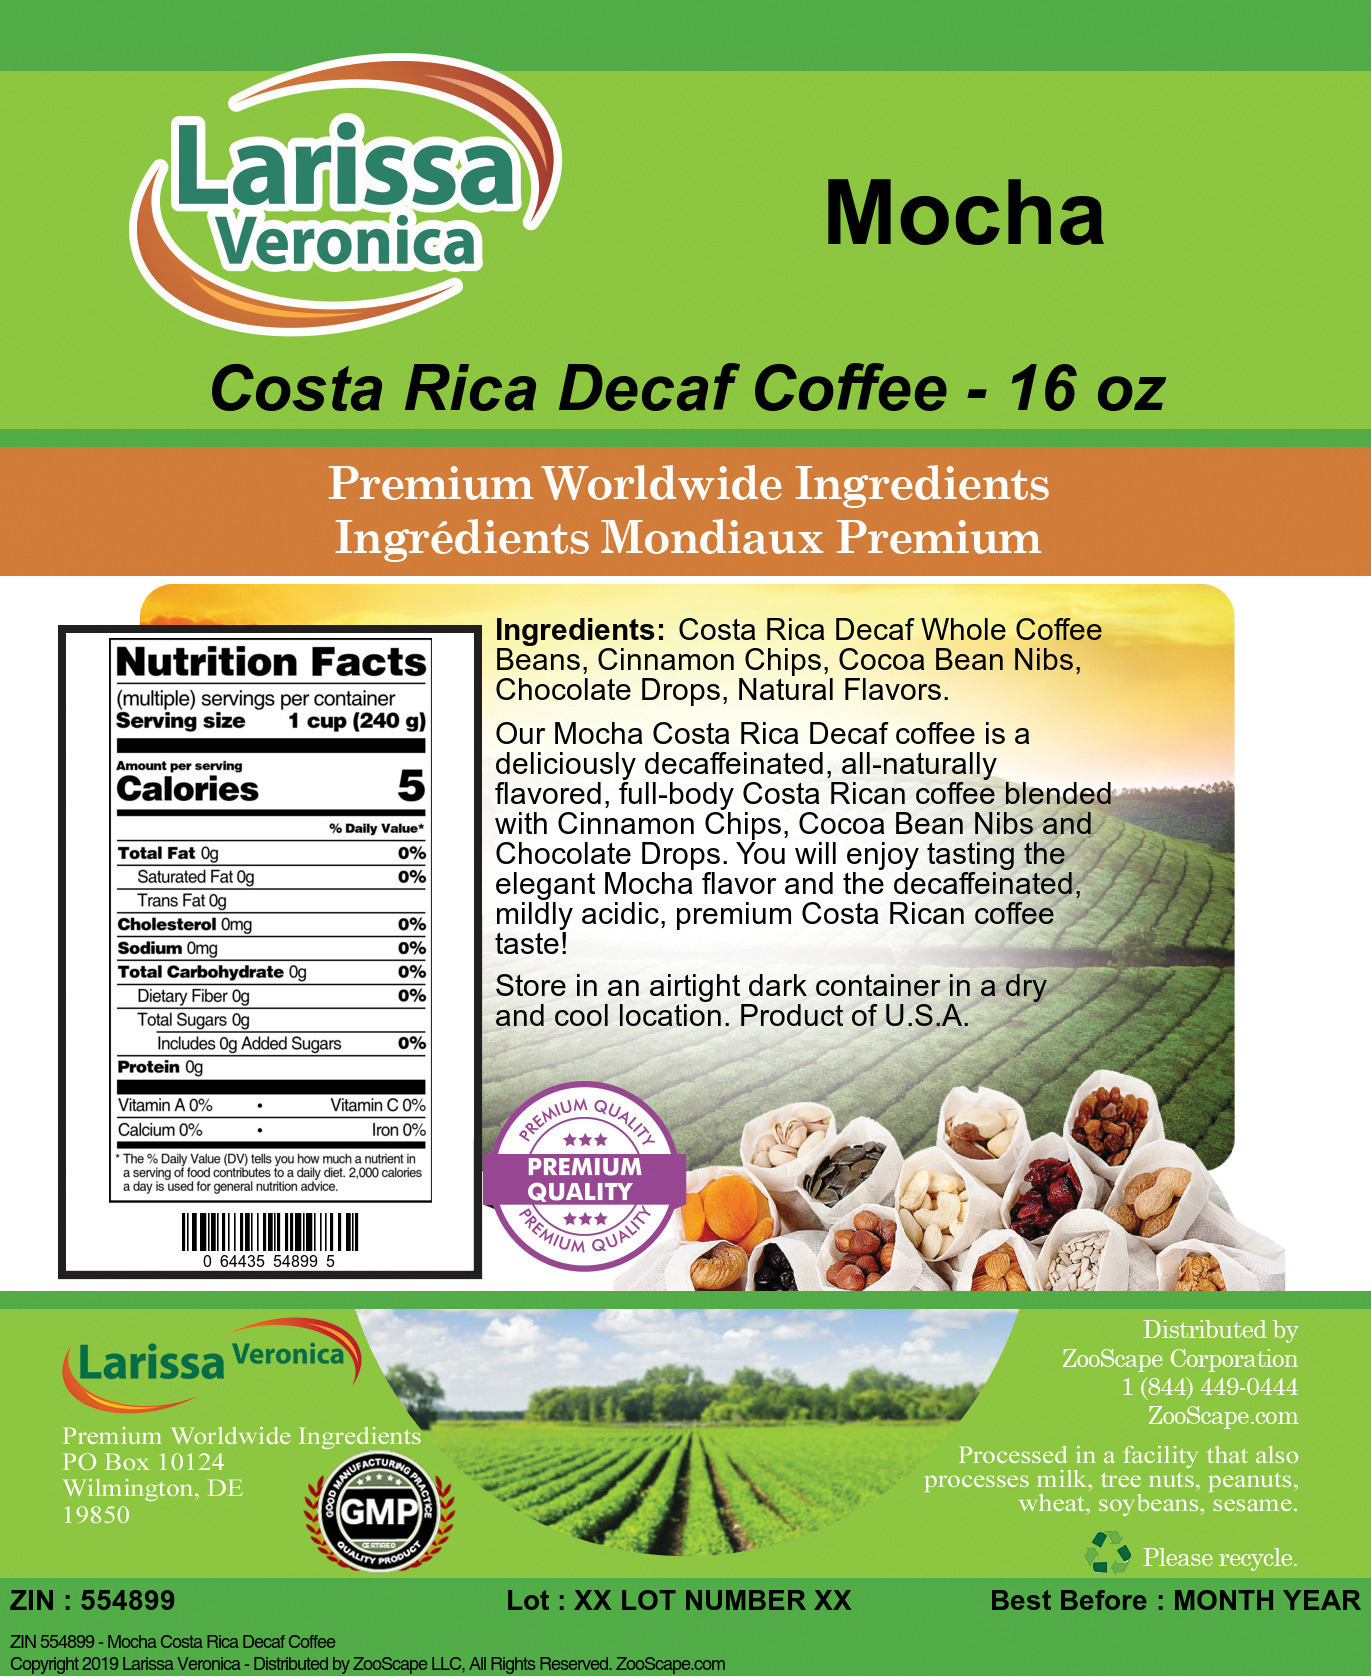 Mocha Costa Rica Decaf Coffee - Label